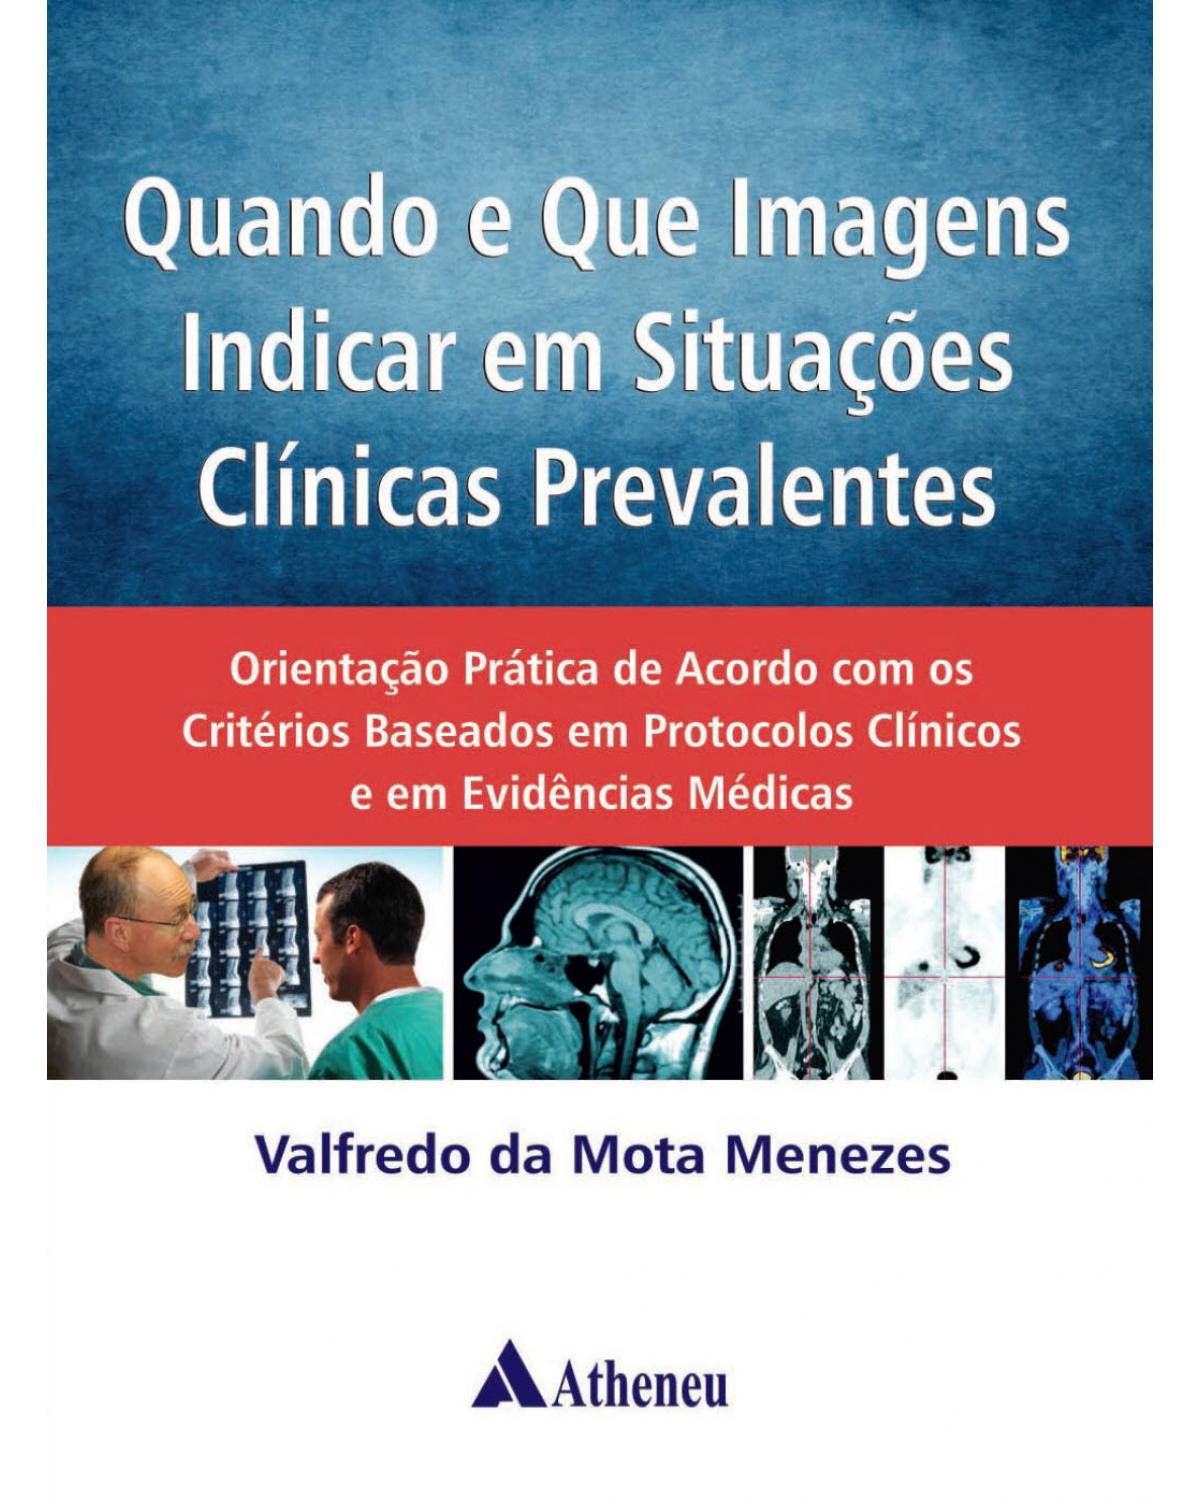 Quando e que imagens indicar em situações clínicas prevalentes - orientação prática de acordo com os critérios baseados em protocolos clínicos e em evidências médicas - 1ª Edição | 2014